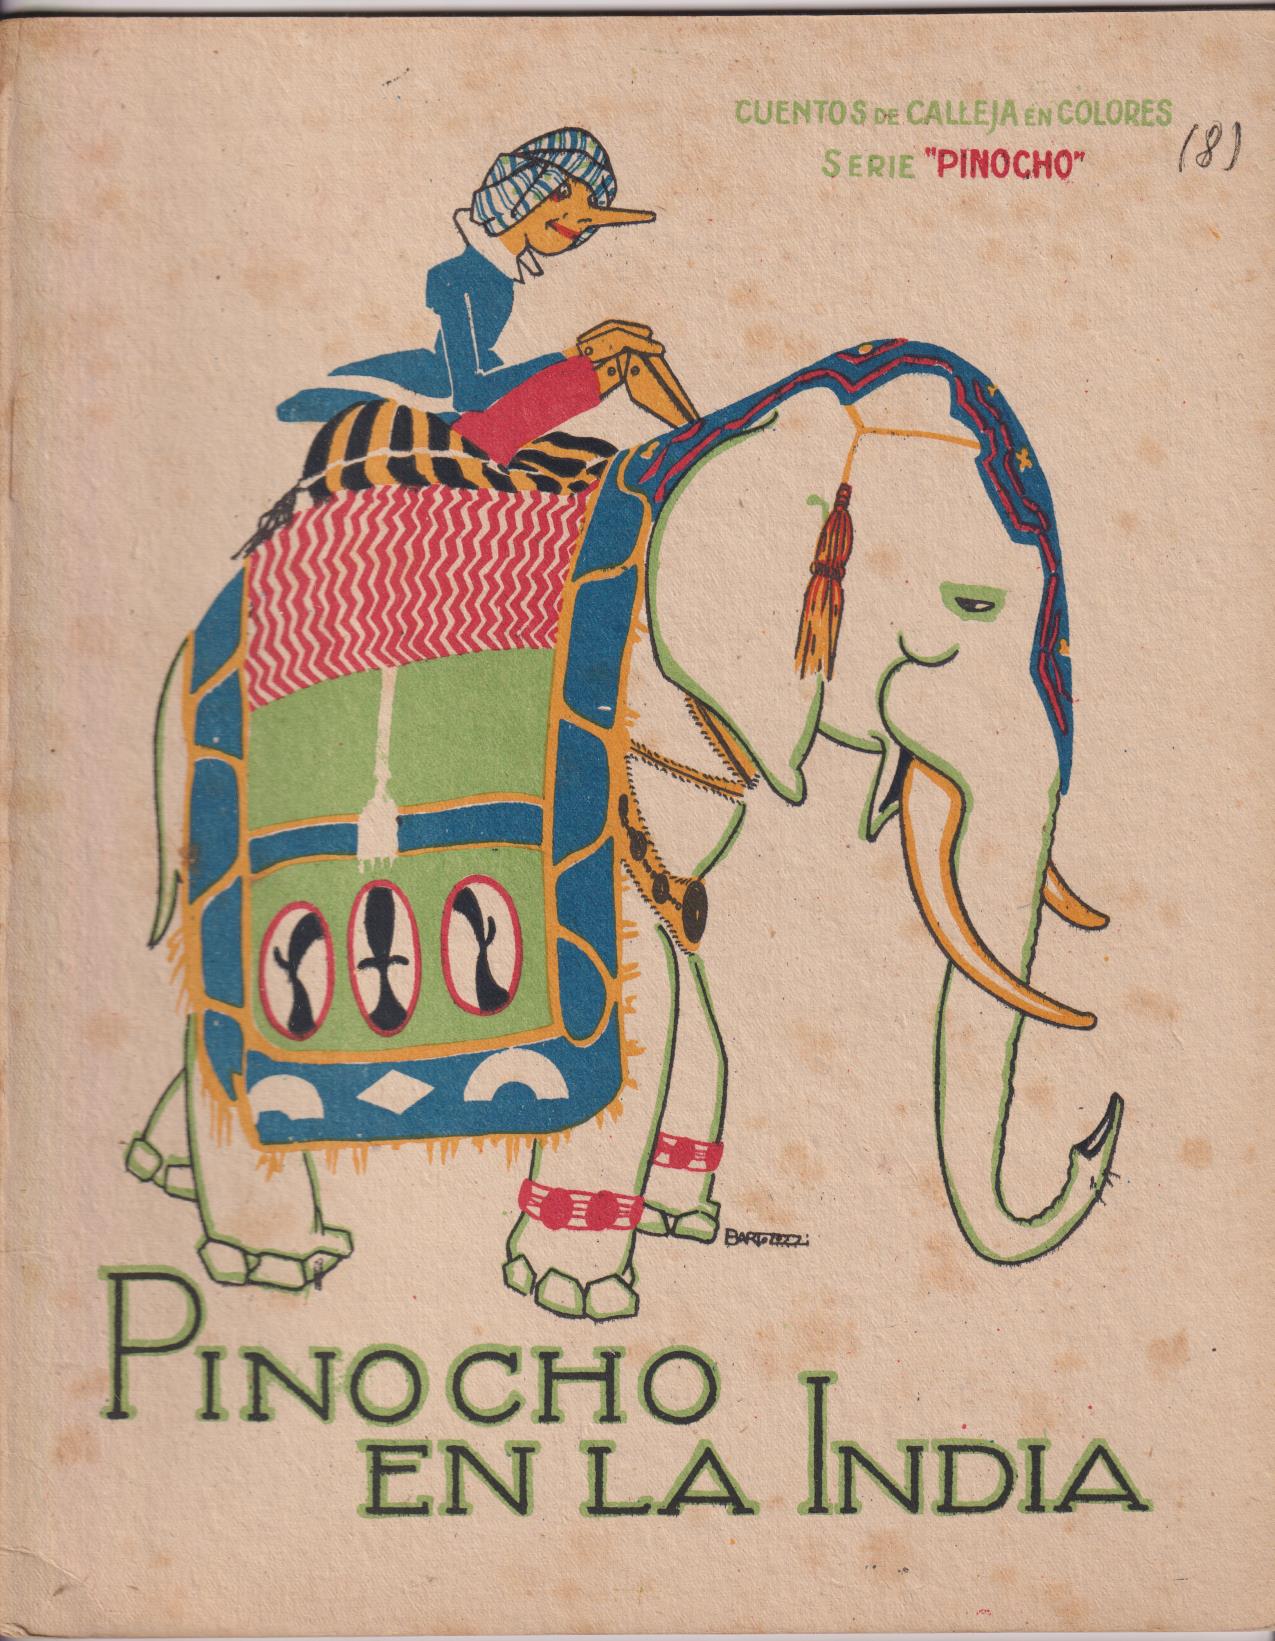 Pinocho nº 8, Pinocho en la India. 1ª Edición Calleja 1919. (28x22) 16 páginas DIFÍCILES